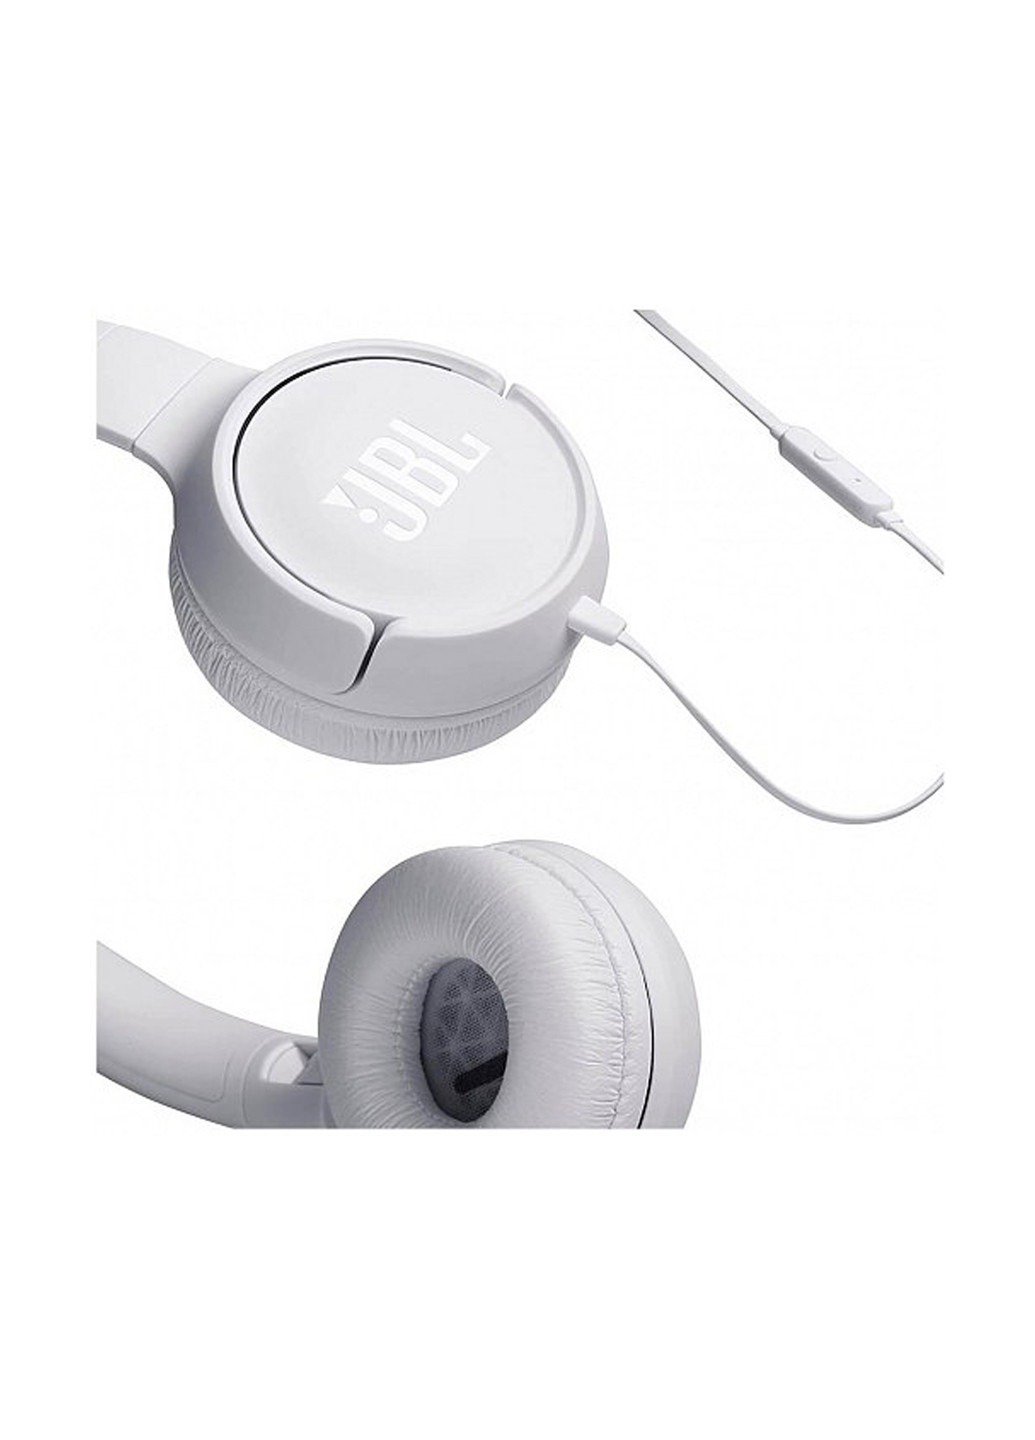 Навушники T500 White (T500WHT) JBL t500 white (jblt500wht) (160880293)